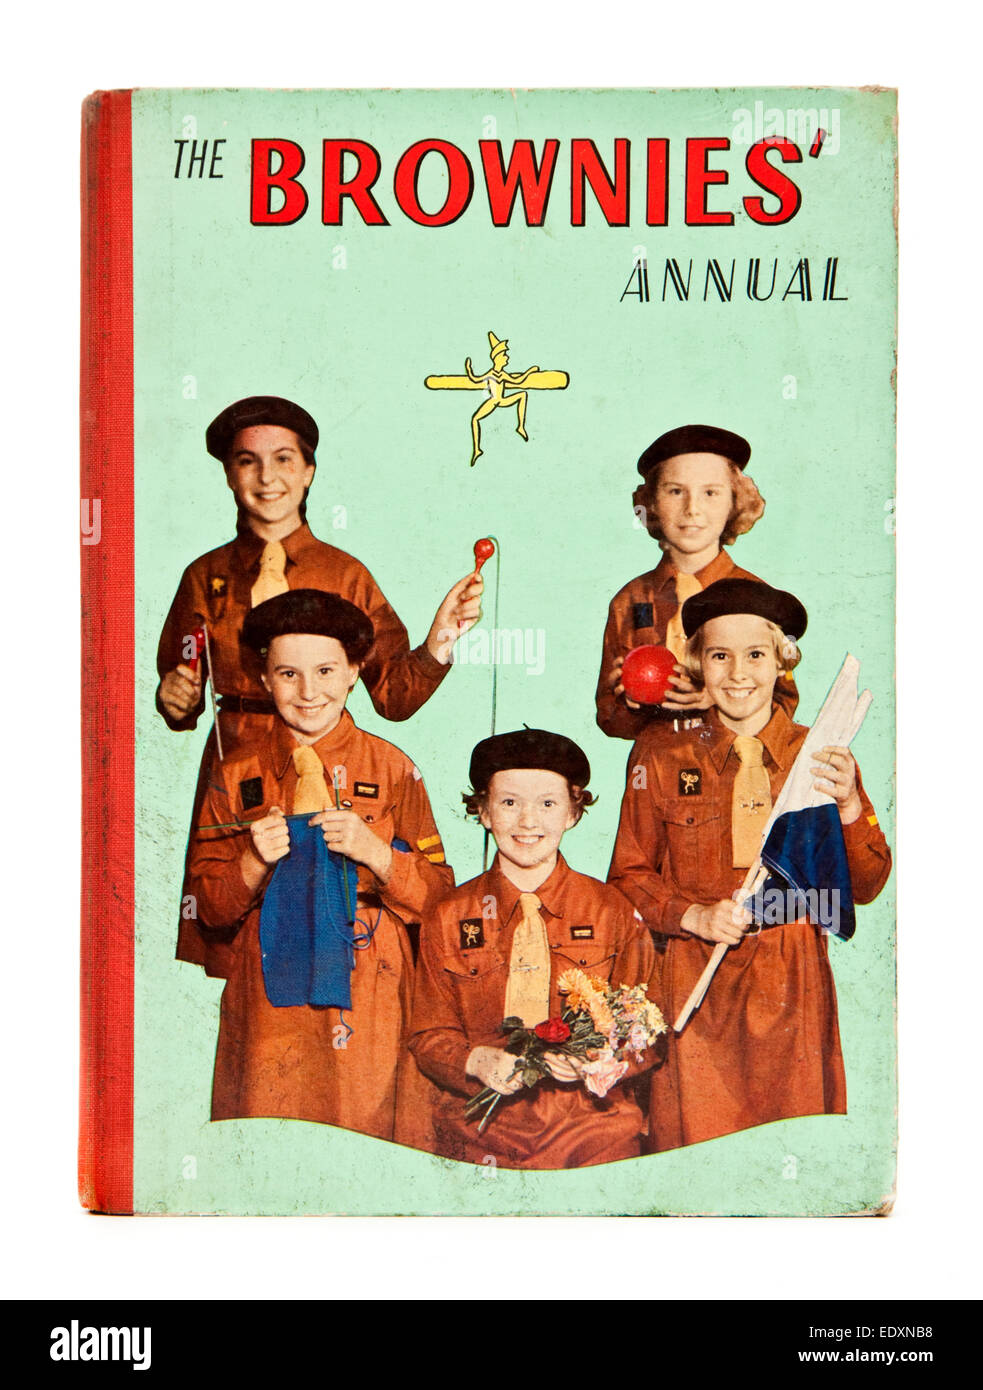 1960 Copia de 'Los brownies'' anuales. Los brownies son un británico guidismo asociación fundada por Lord Baden-Powell en 1914 Foto de stock